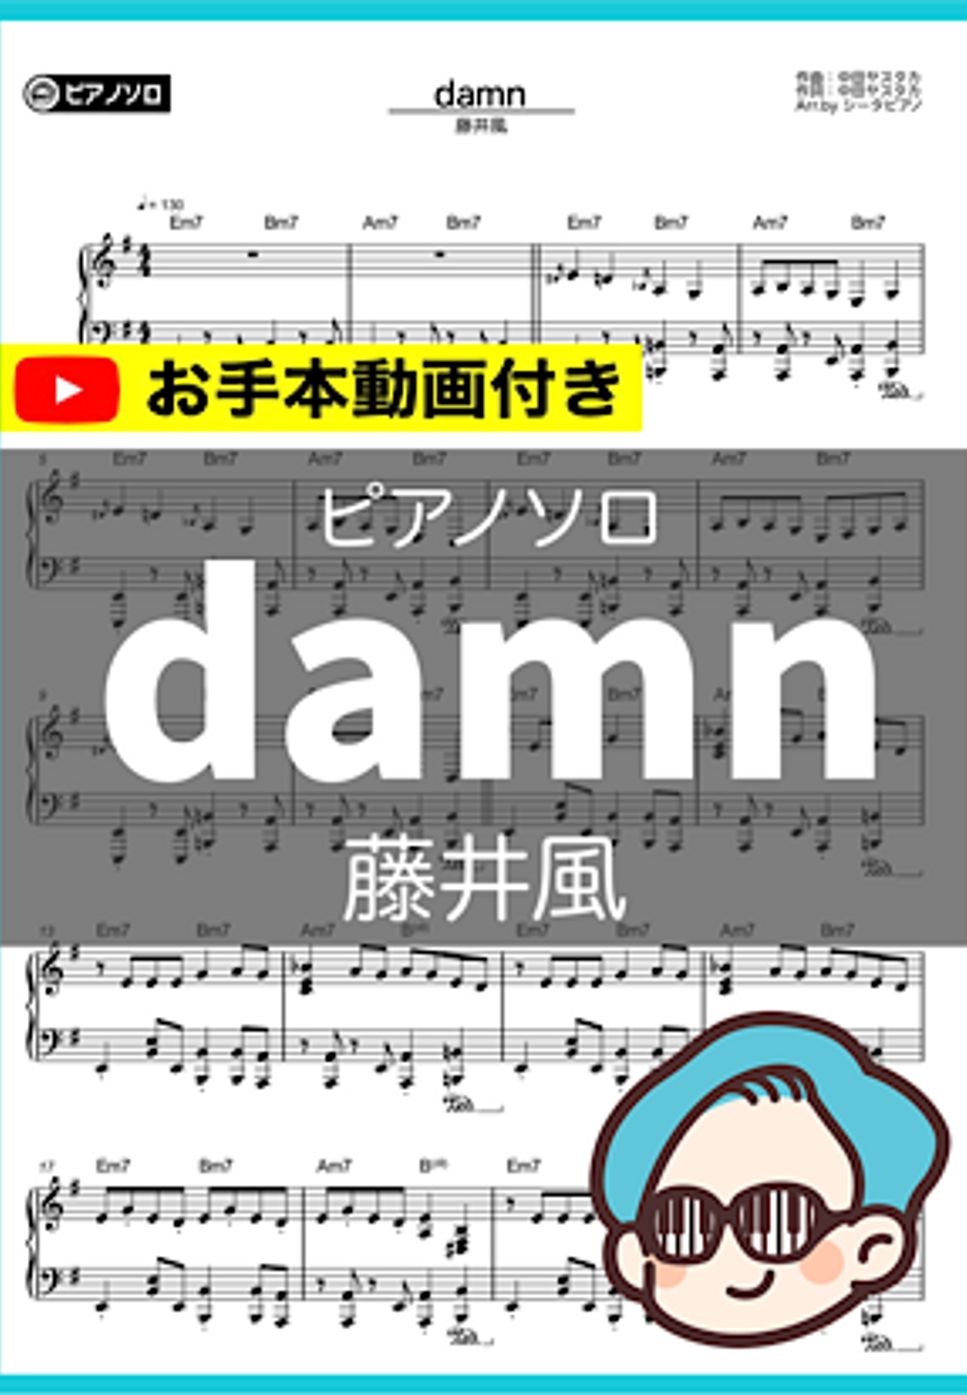 藤井風 - damn by シータピアノ